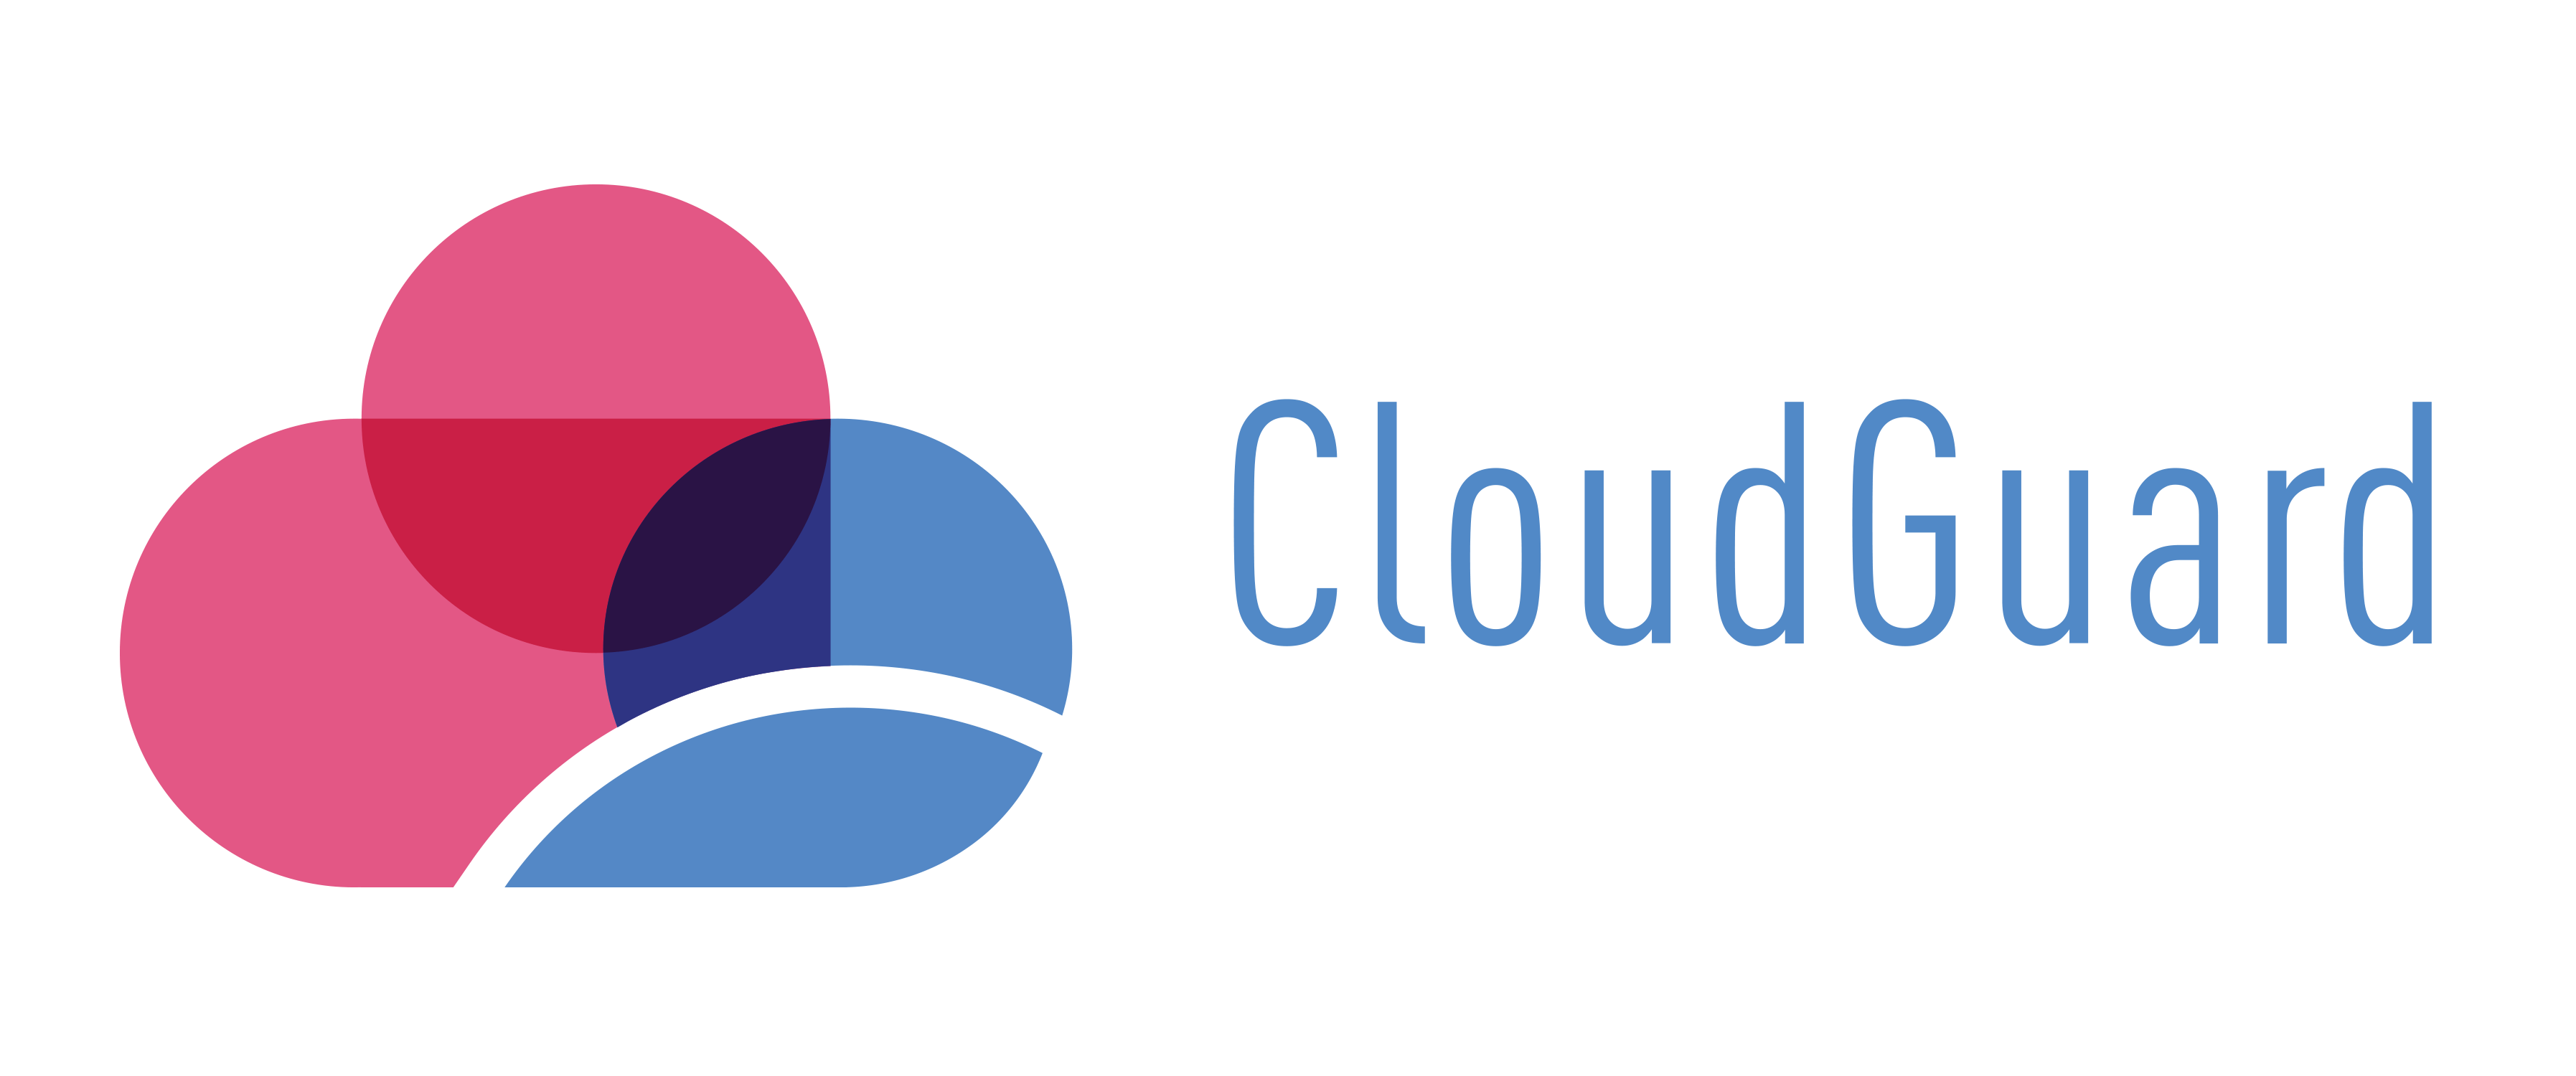 CloudGuard 로고